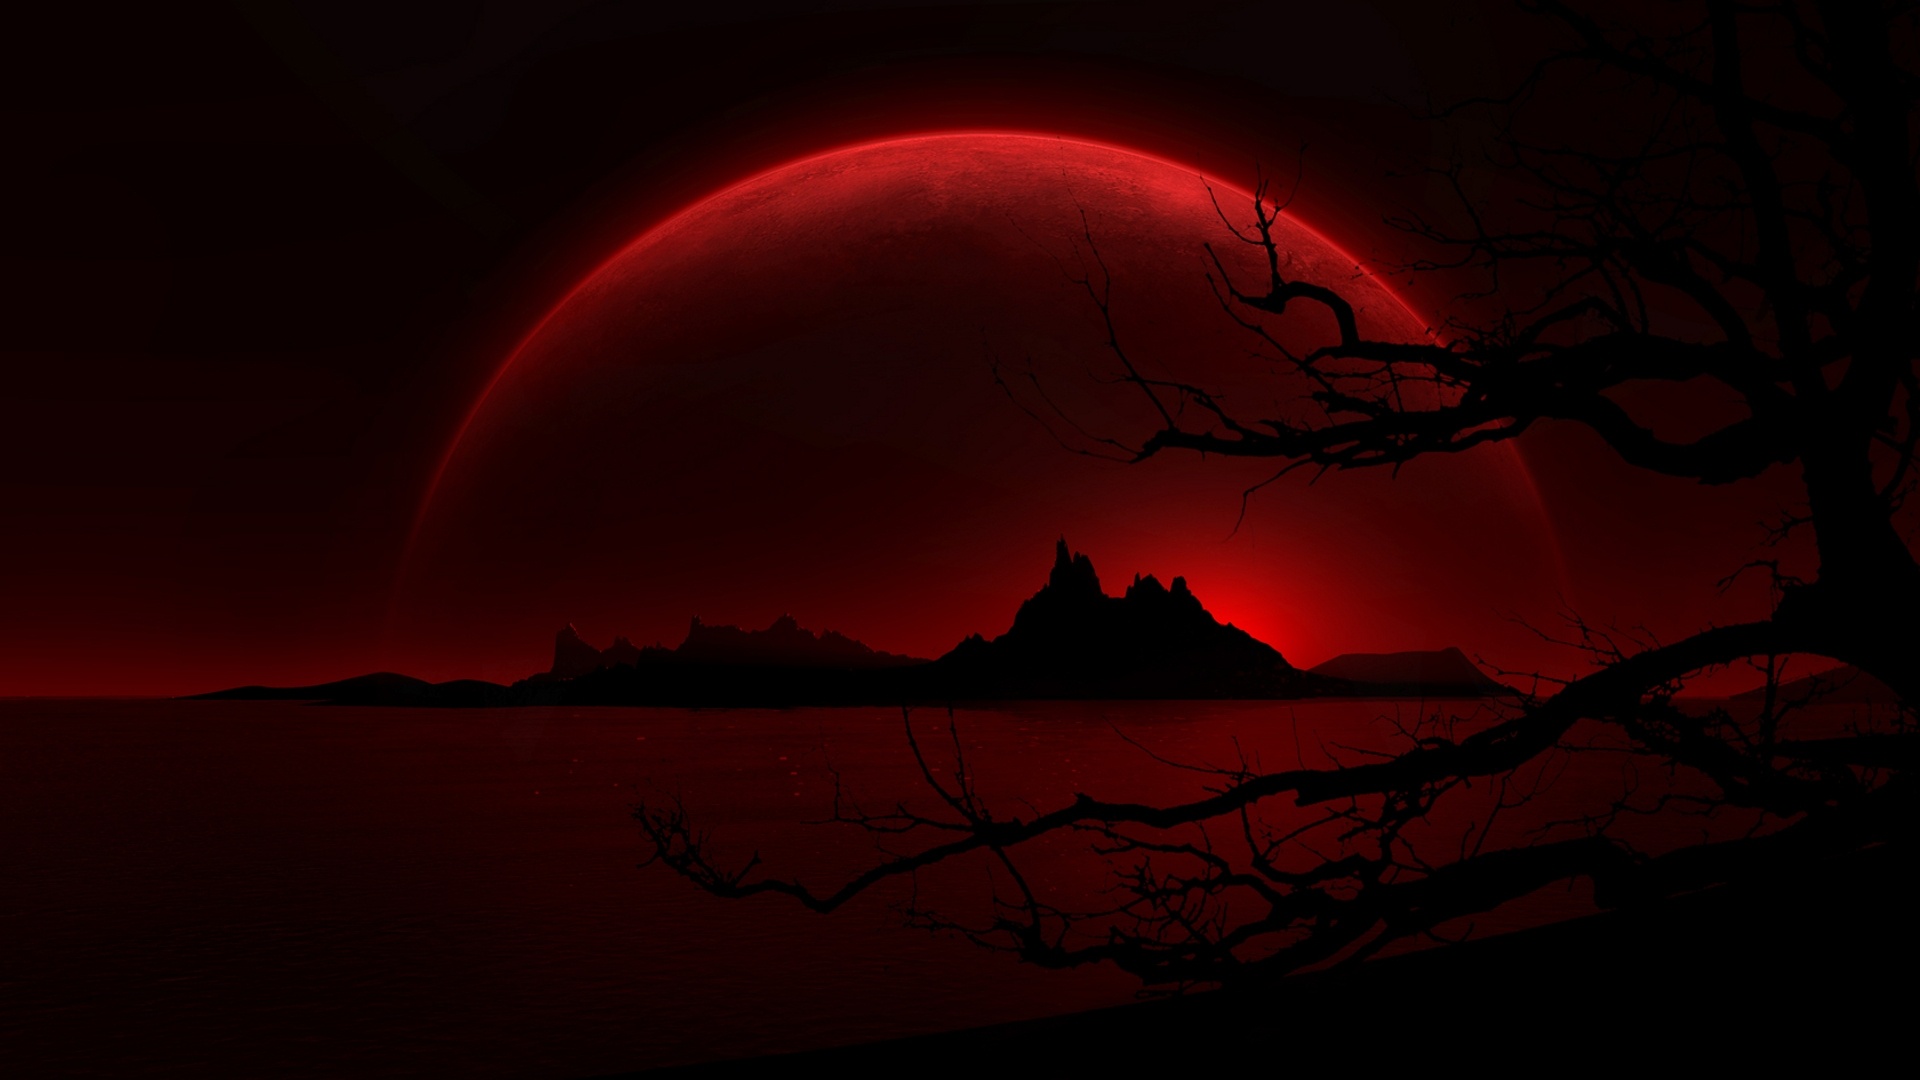 Hình Nền Mặt Trăng Đỏ - Tận hưởng vẻ đẹp của một hình nền đầy nghệ thuật với mặt trăng đỏ tươi rực trên nền đen tối. Bức tranh sẽ đưa bạn đến với một thế giới đầy huyền bí và lãng mạn.